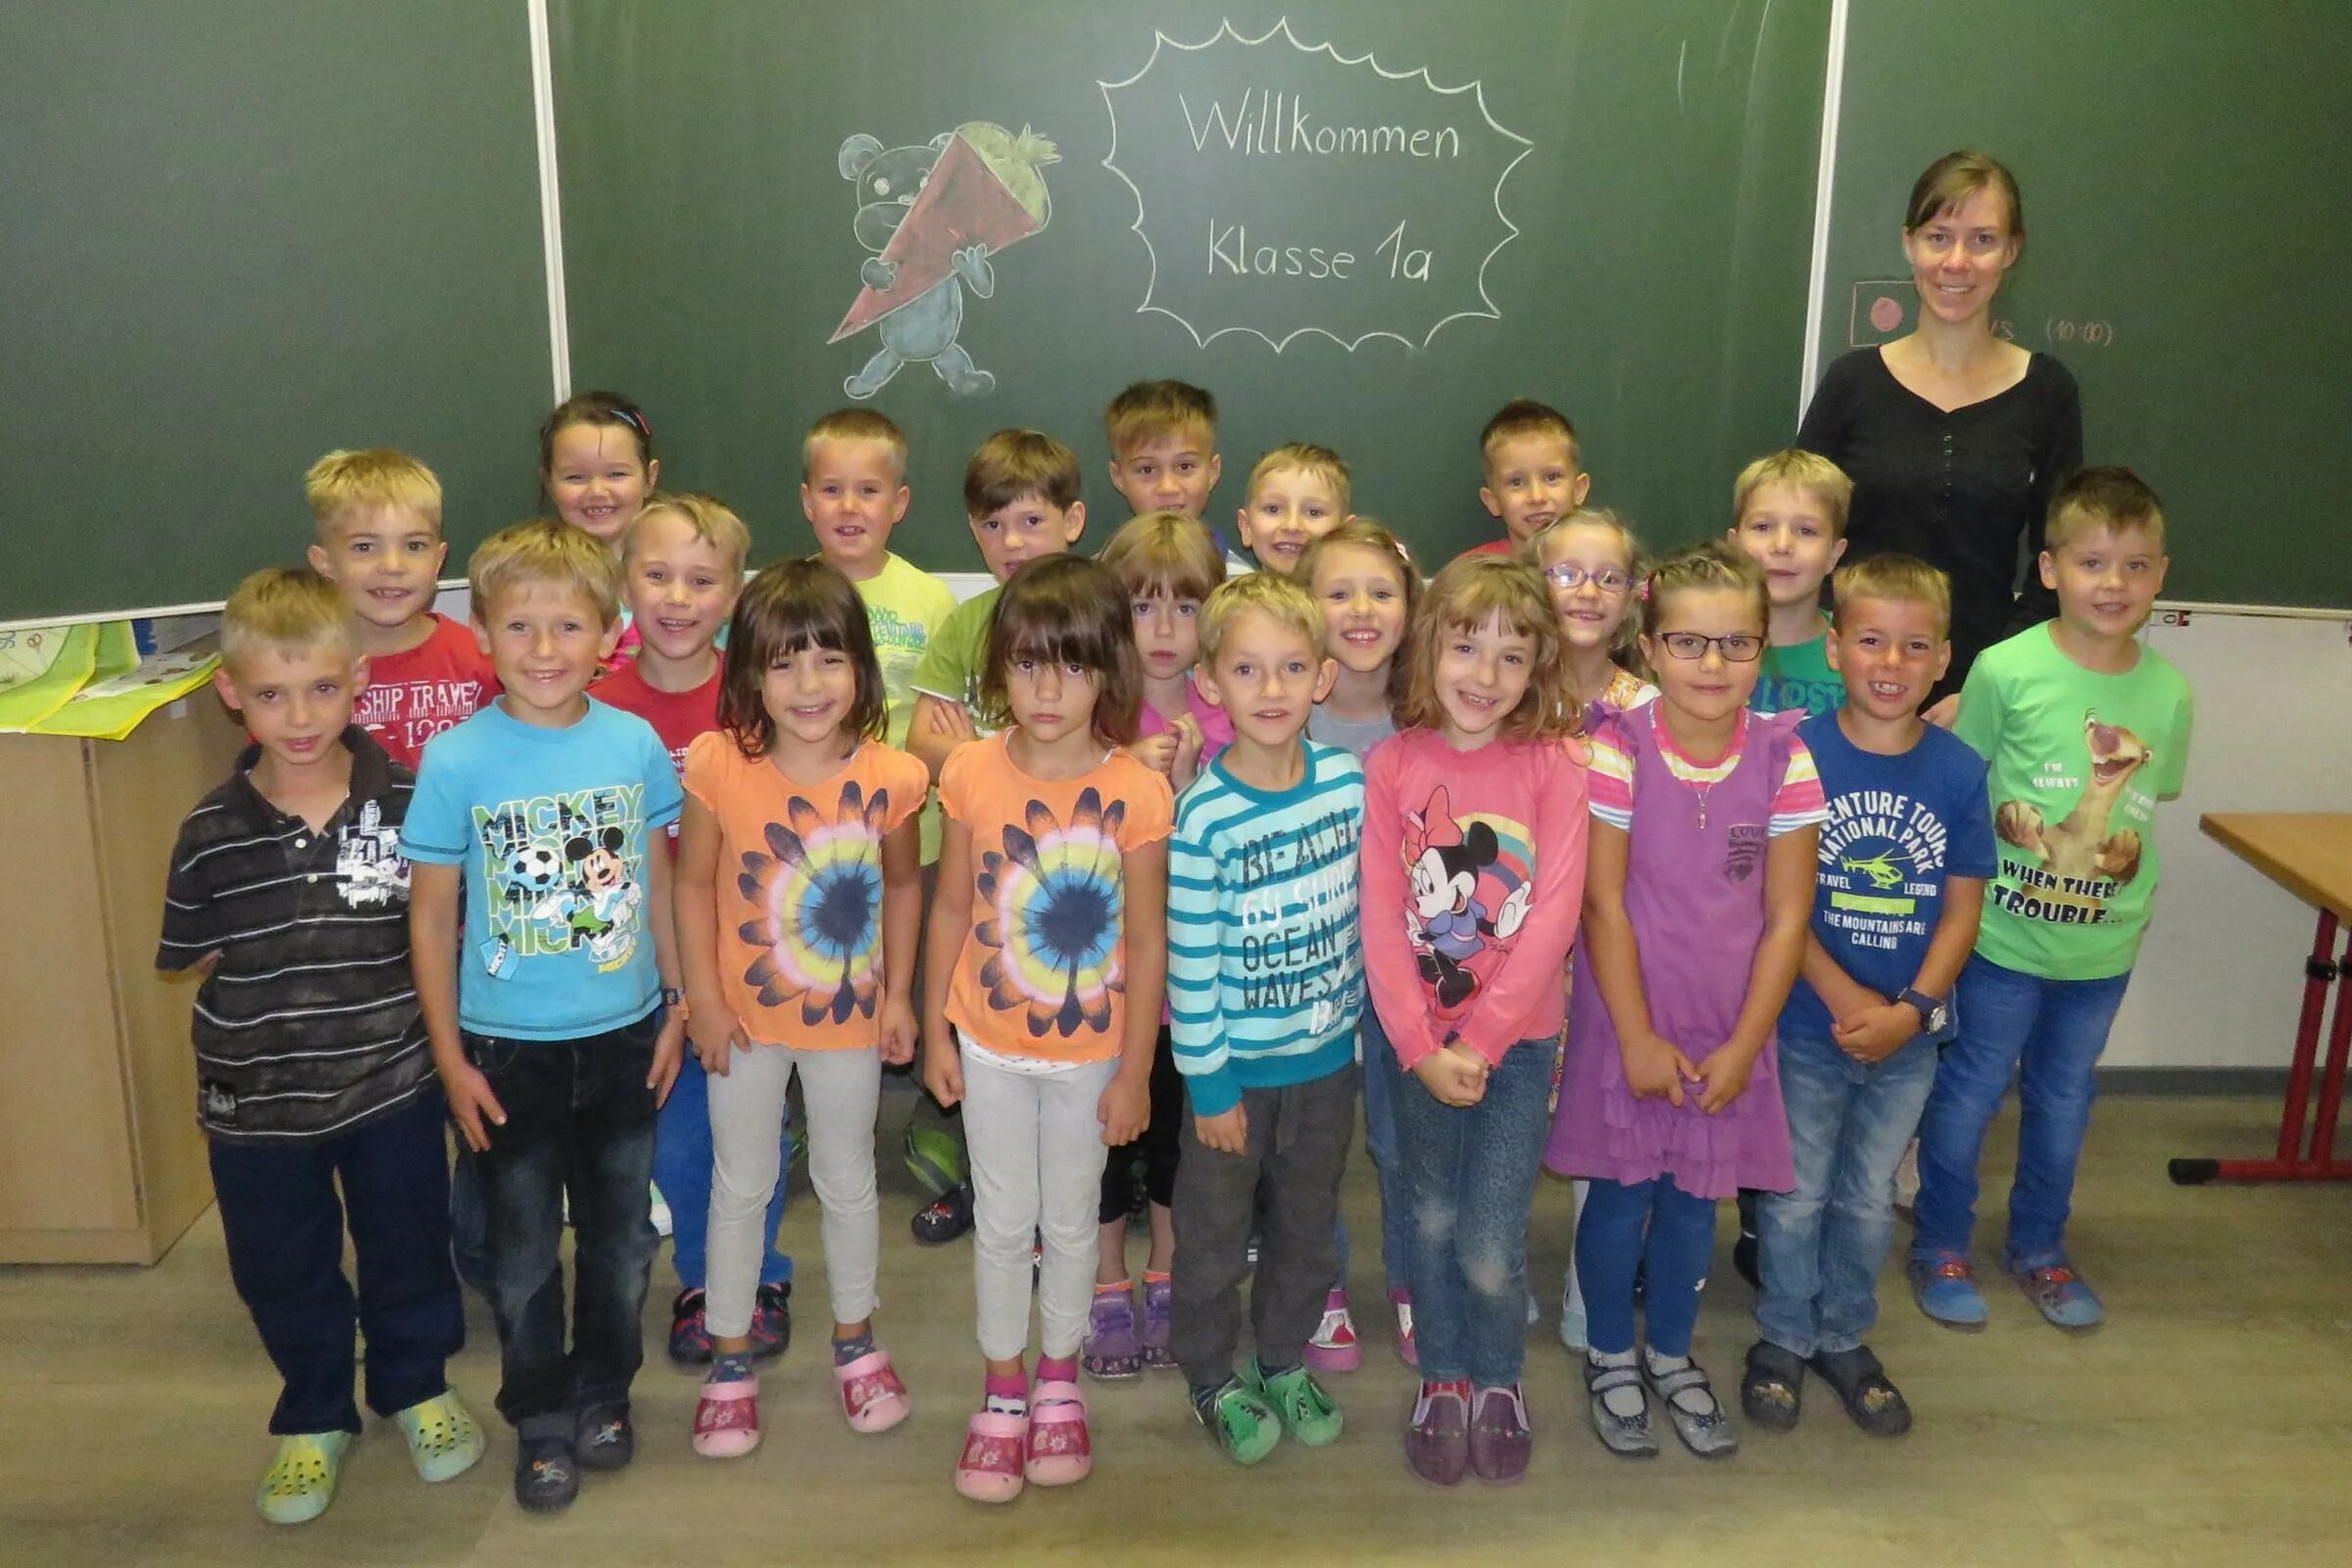 Начальная школа в Германии Grundschule. Школа в Германия груншули начальная школа 61. Второгодник в первом классе. Klasse b1.1.